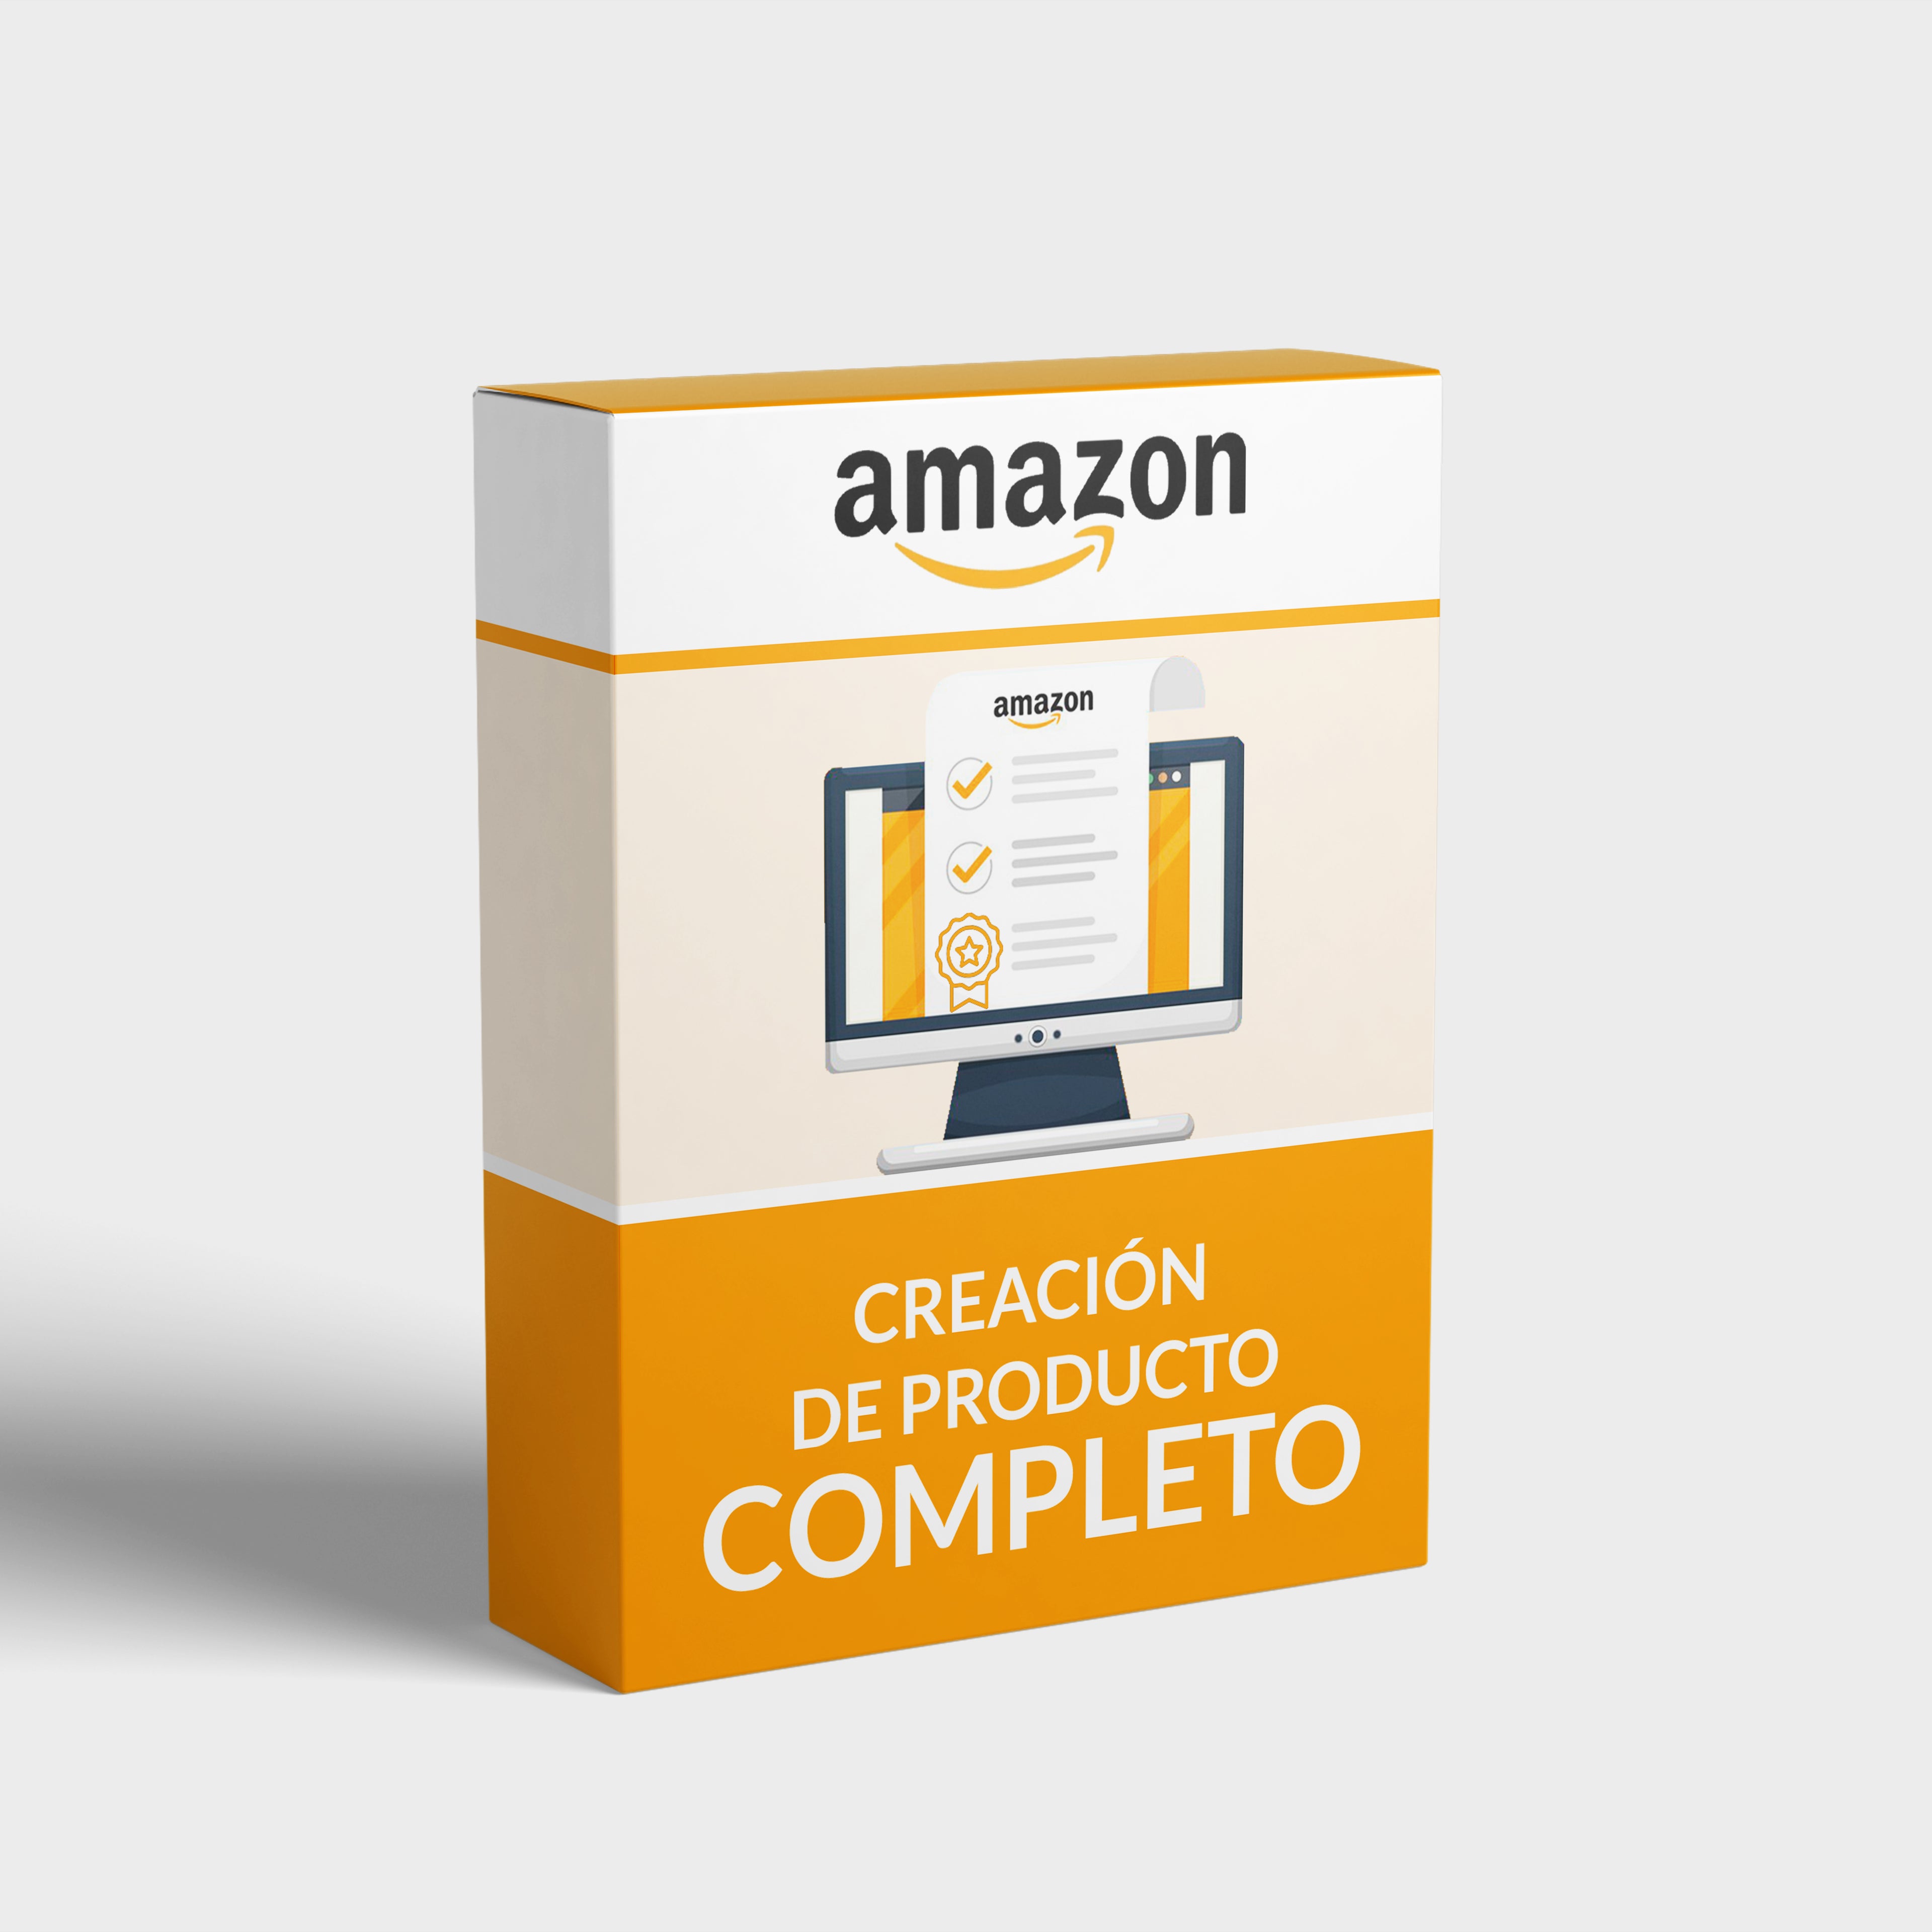 Producto completo Amazon